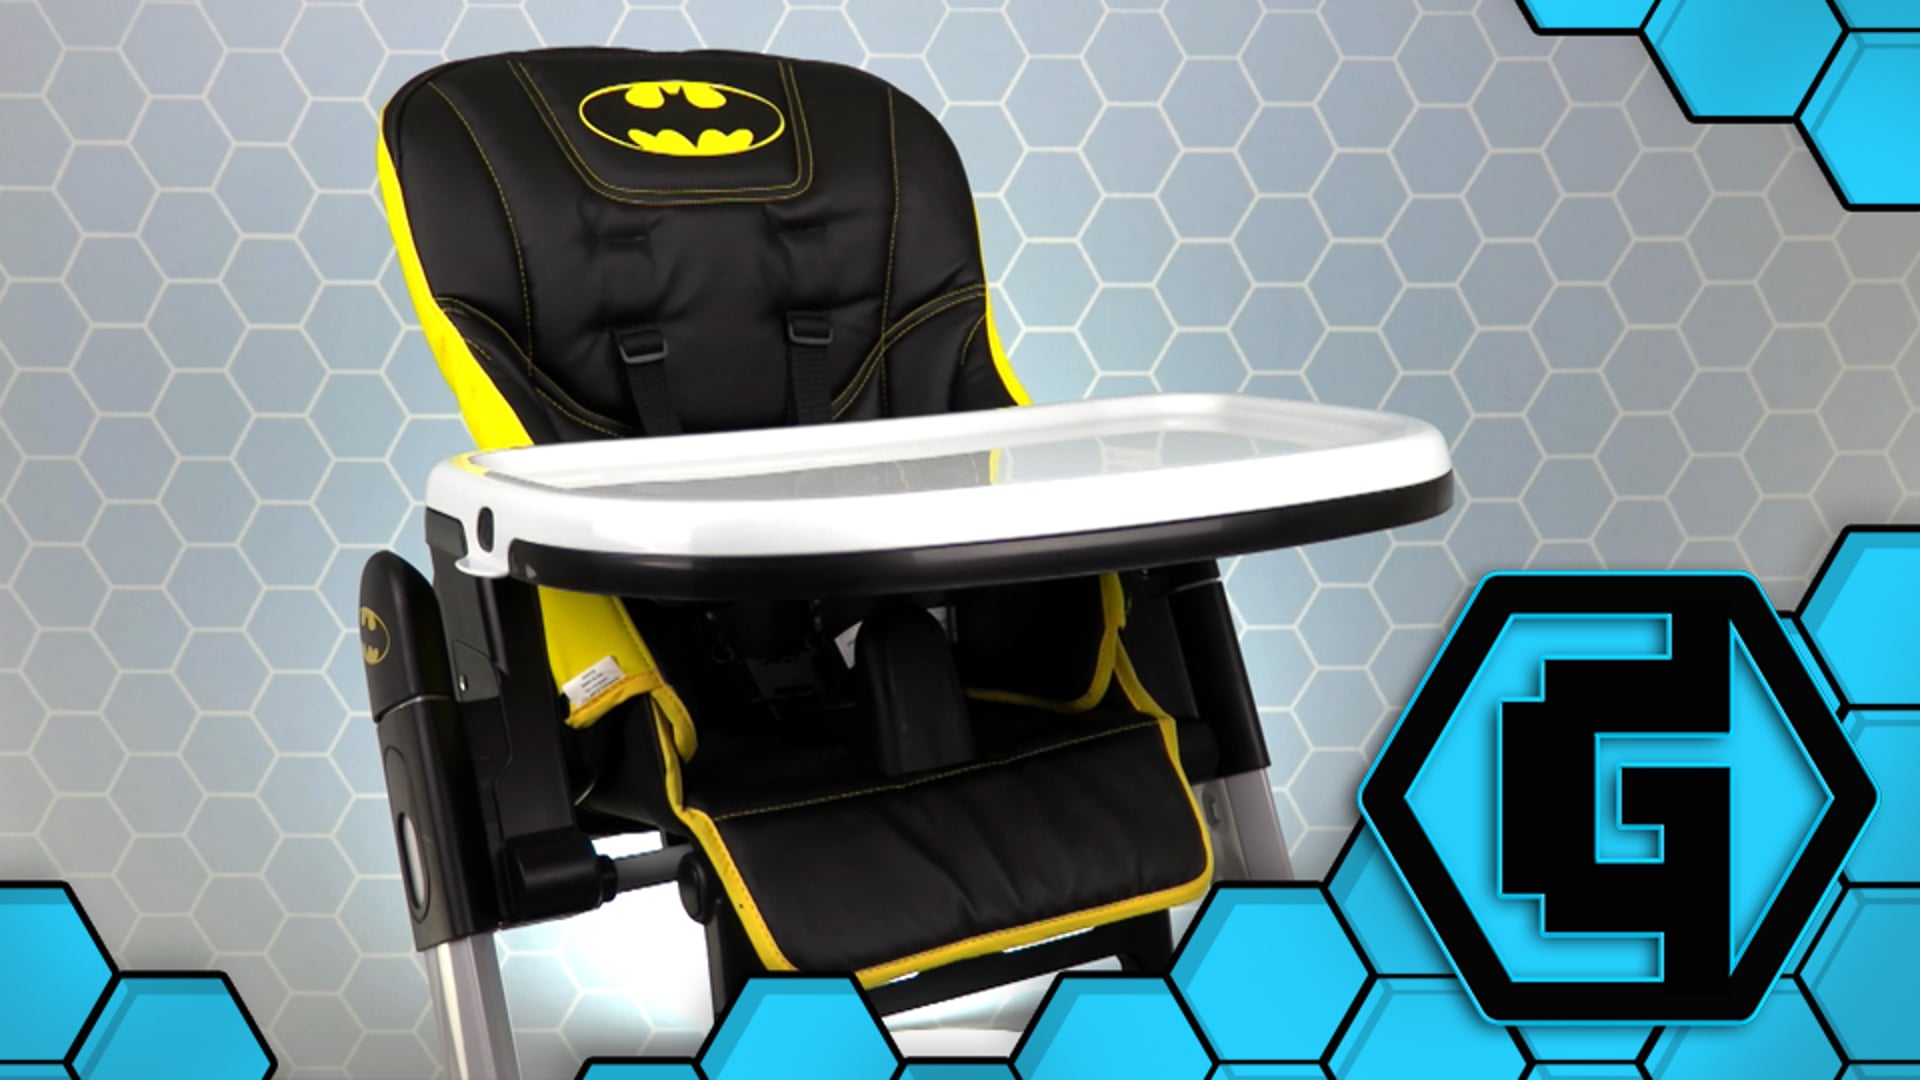 The Geekery View - Batman High Chair